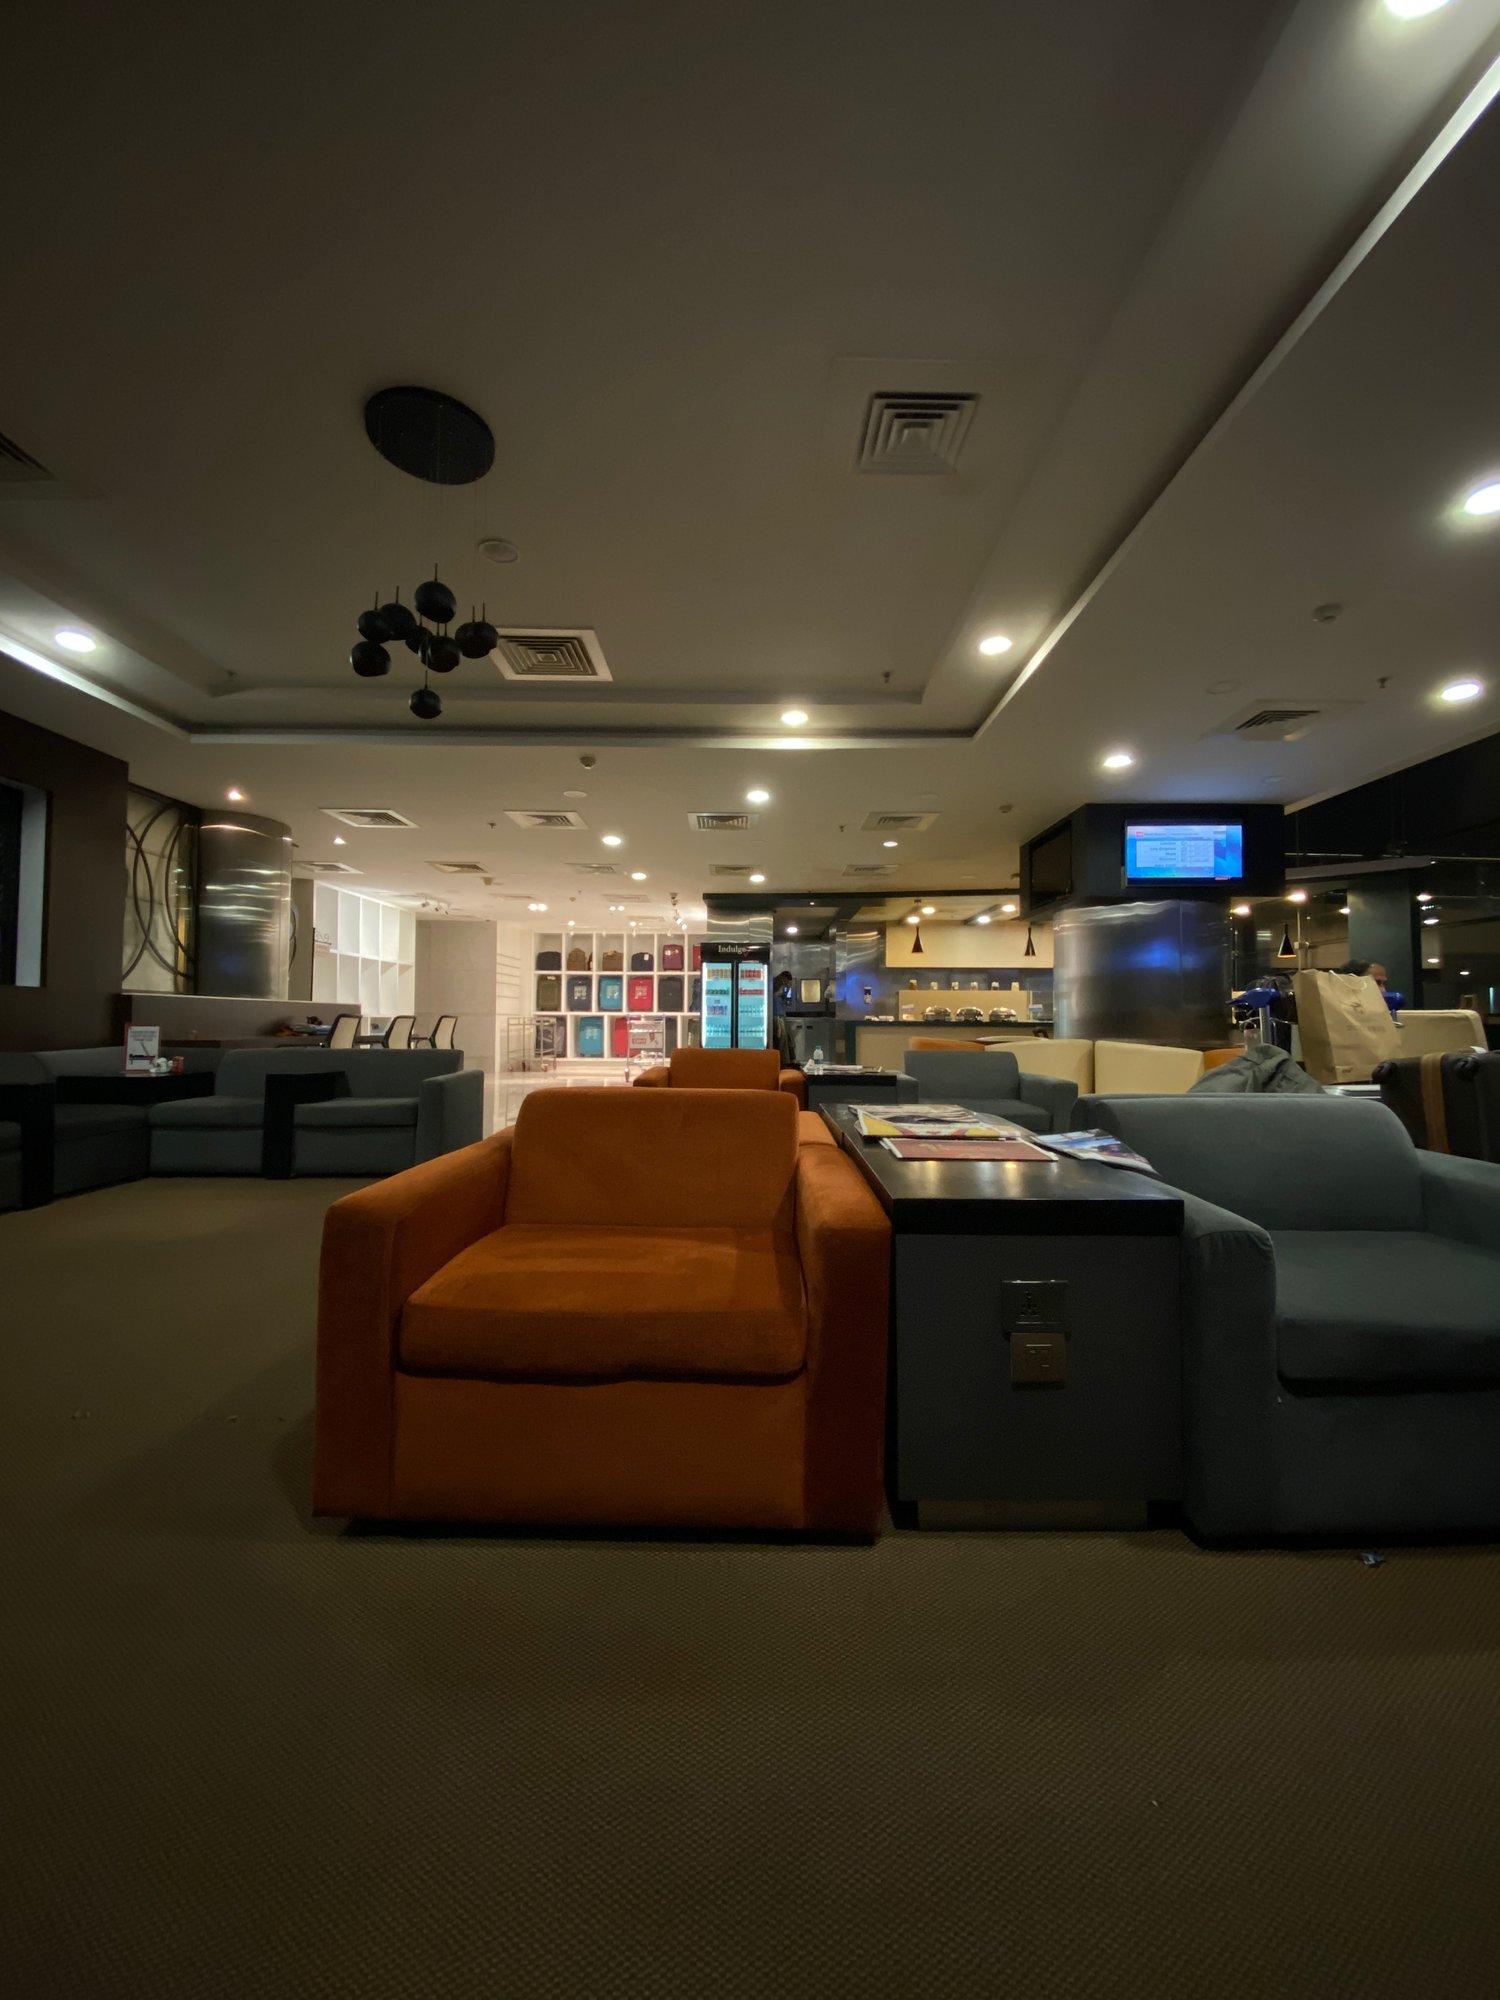 Aviserv Lounge (West) image 9 of 16